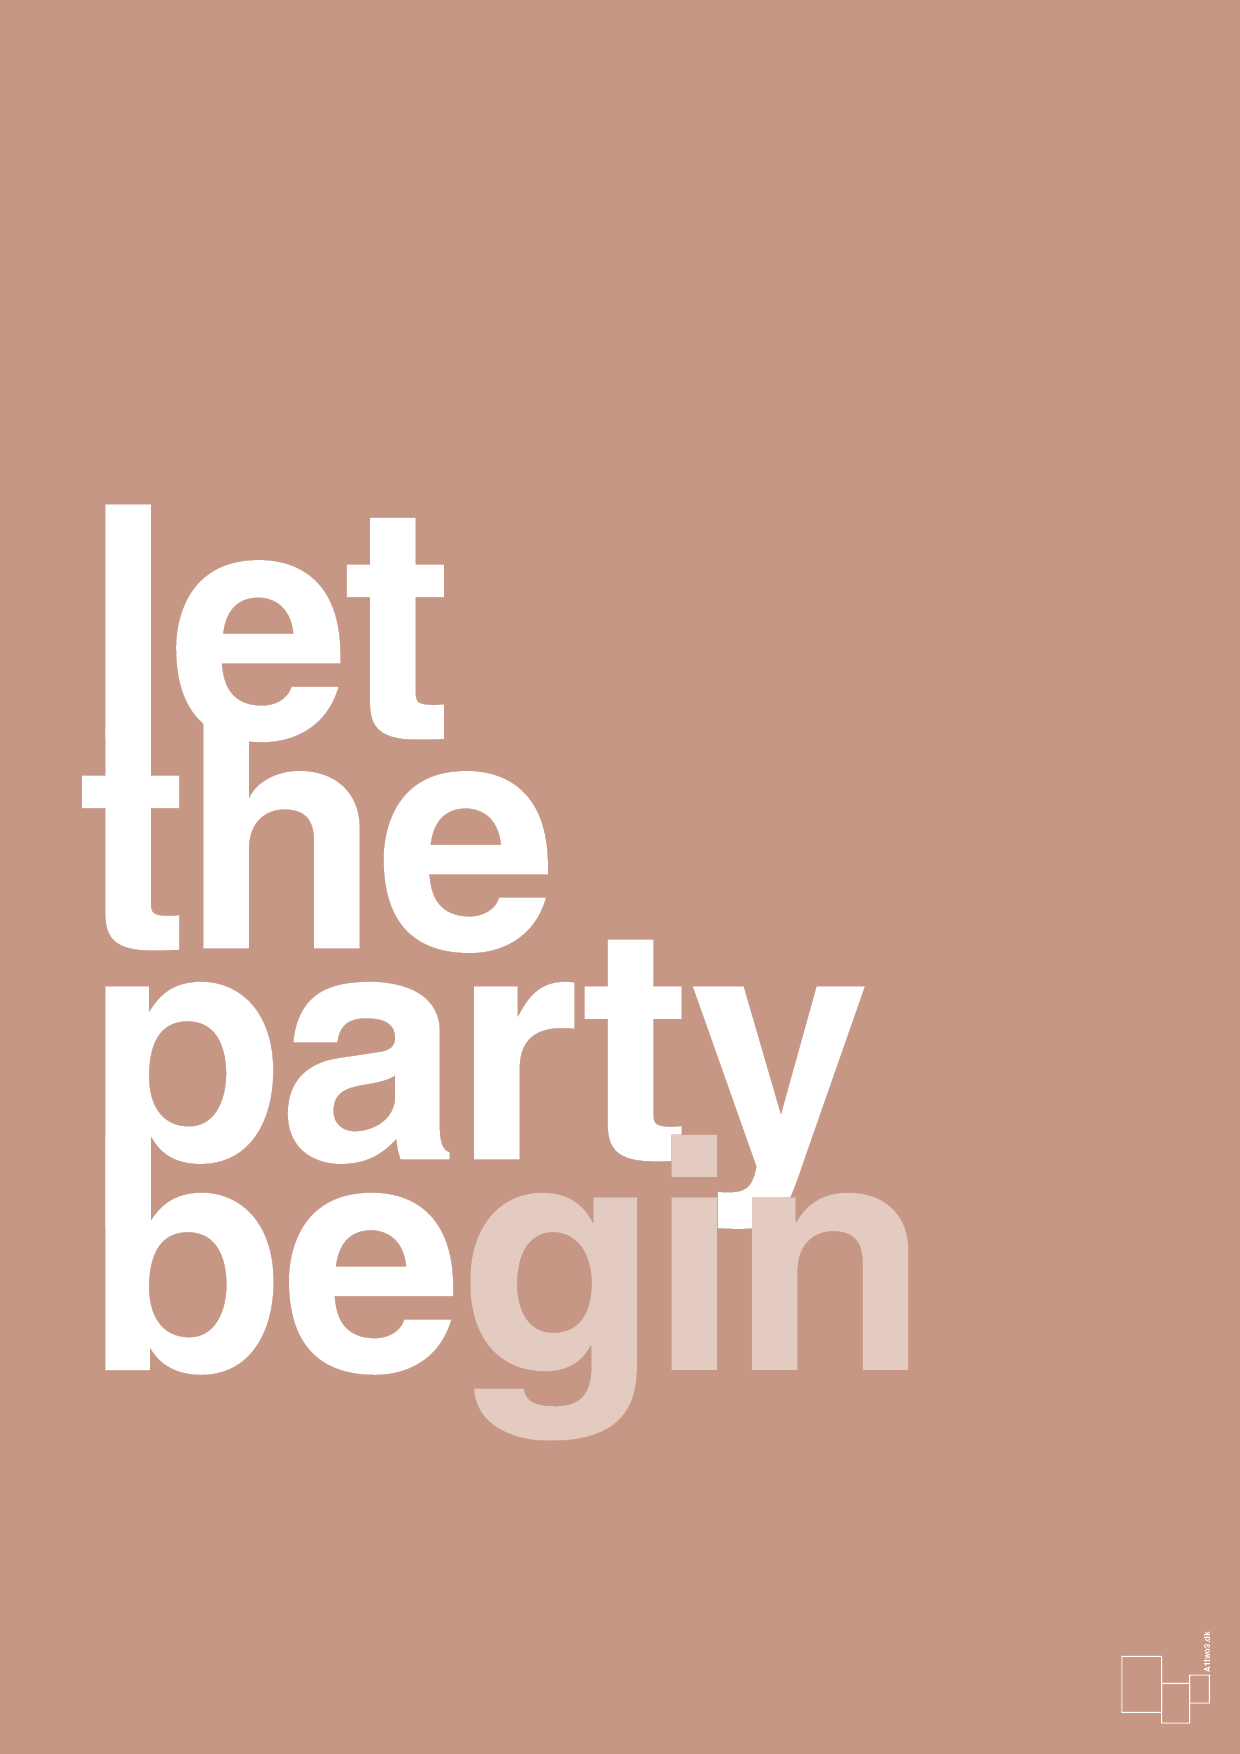 let the party begin - Plakat med Ordsprog i Powder